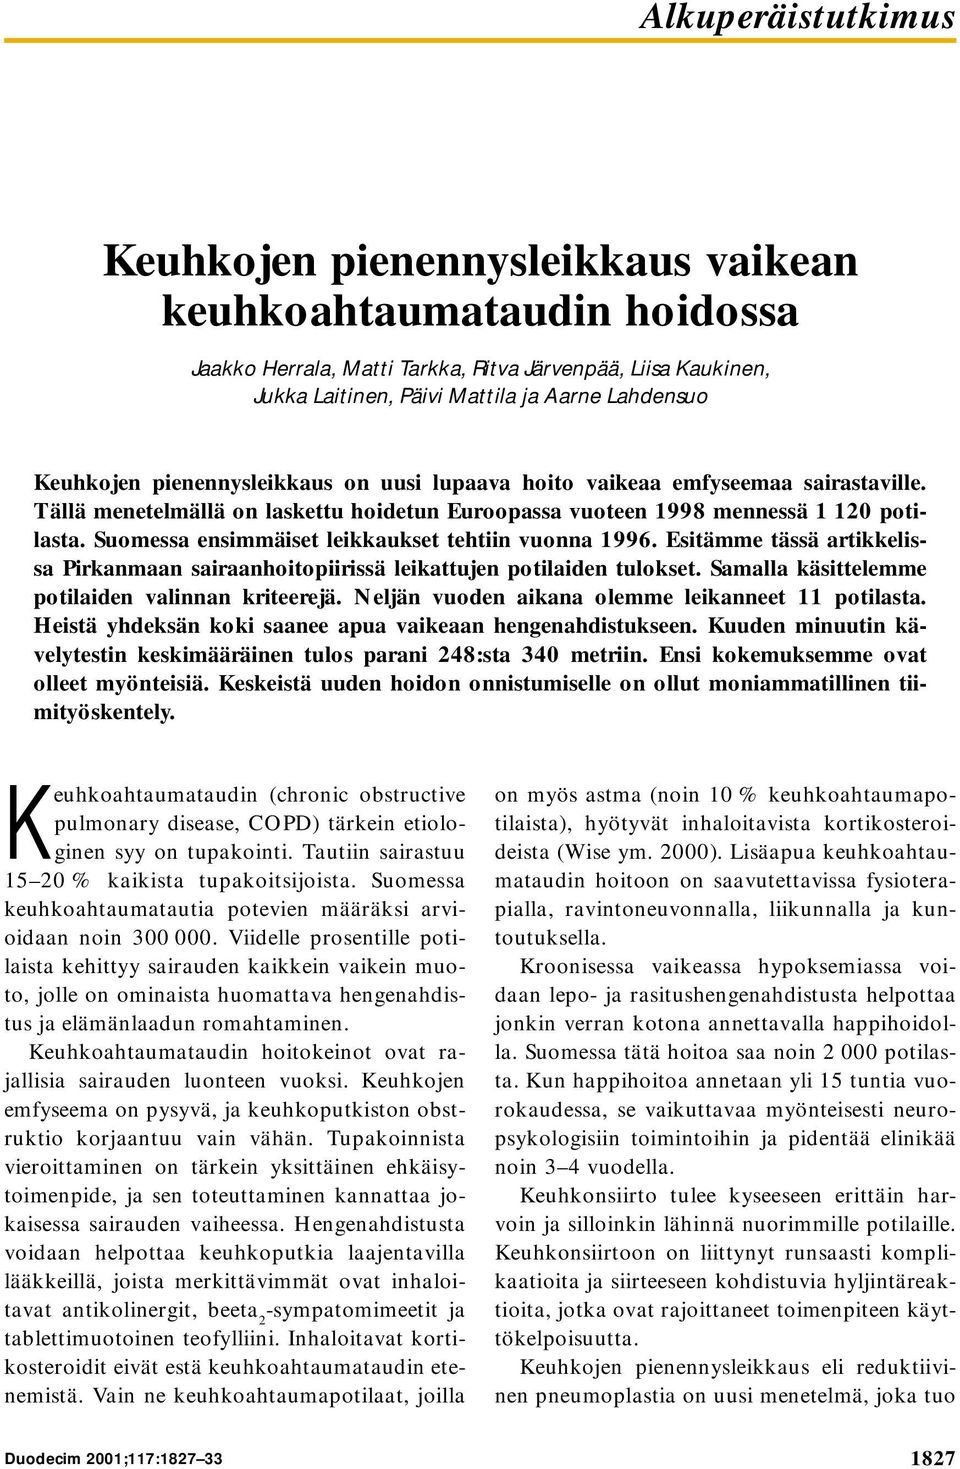 Suomessa ensimmäiset leikkaukset tehtiin vuonna 1996. Esitämme tässä artikkelissa Pirkanmaan sairaanhoitopiirissä leikattujen potilaiden tulokset. Samalla käsittelemme potilaiden valinnan kriteerejä.